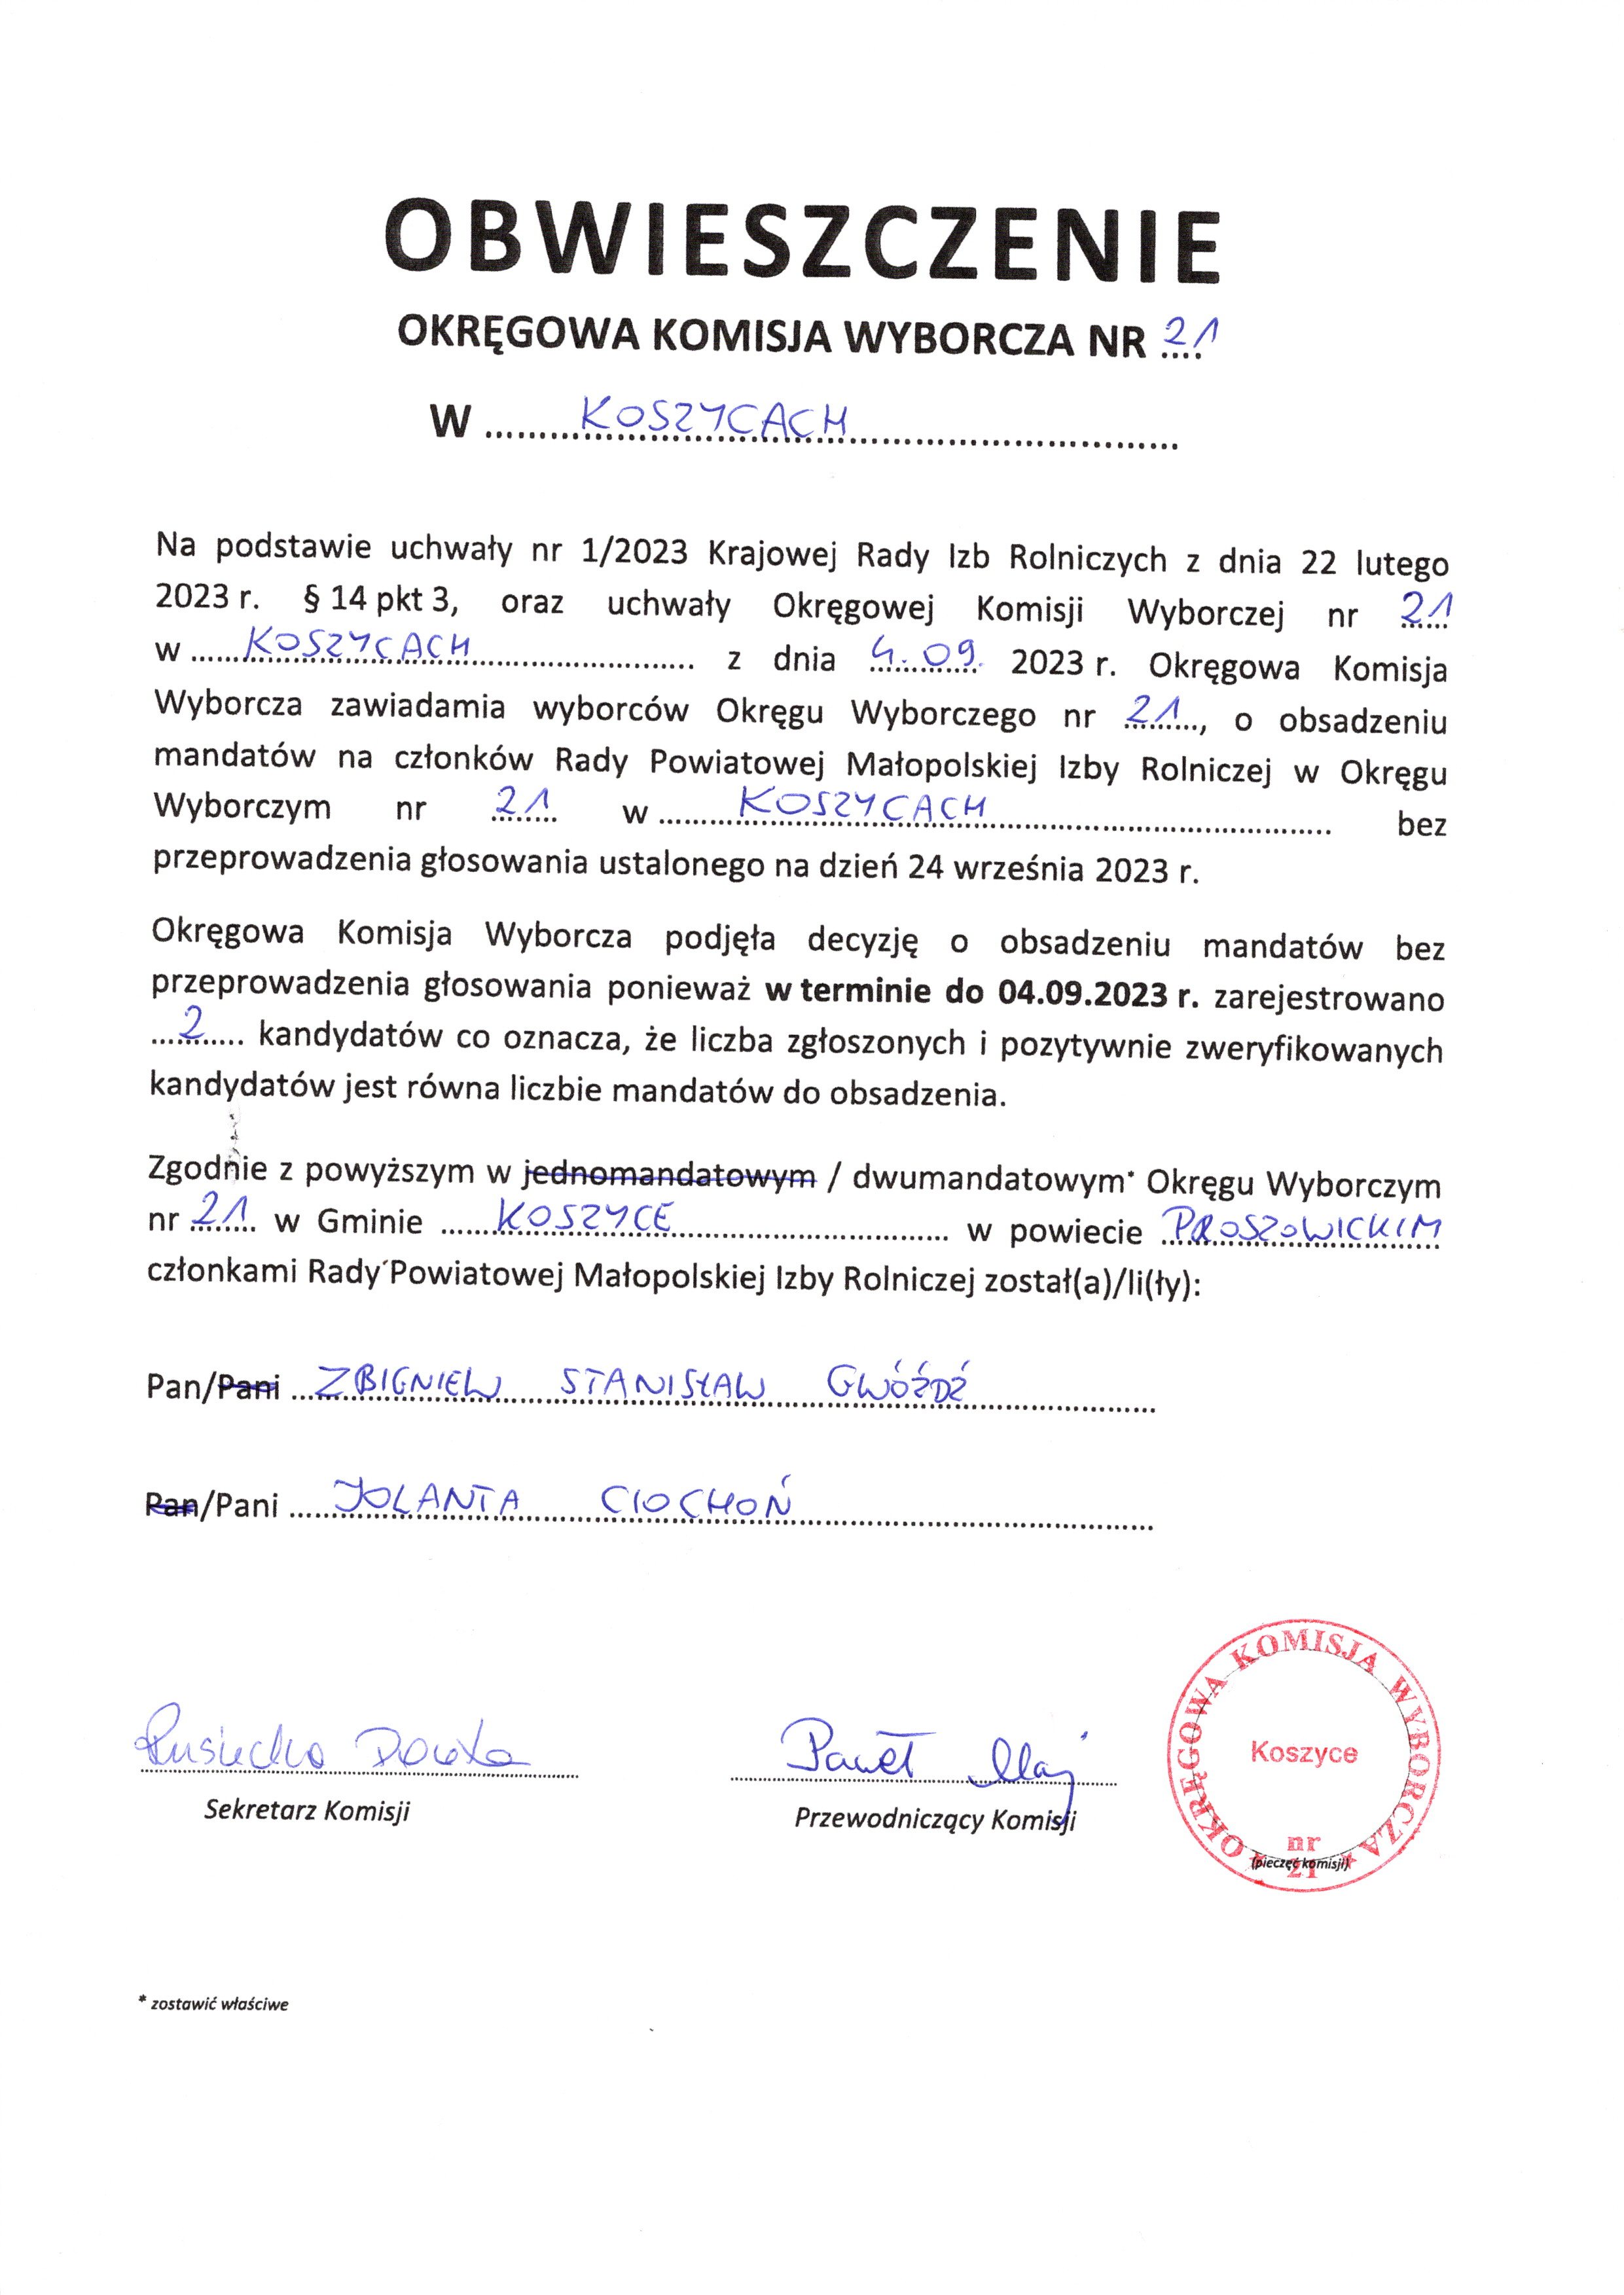 Obwieszczenie Okręgowej Komisji Wyborczej nr 21 o obsadzeniu mandatów na członków Rady Powiatowej Małopolskiej Izby Rolniczej bez przeprowadzenia głosowania